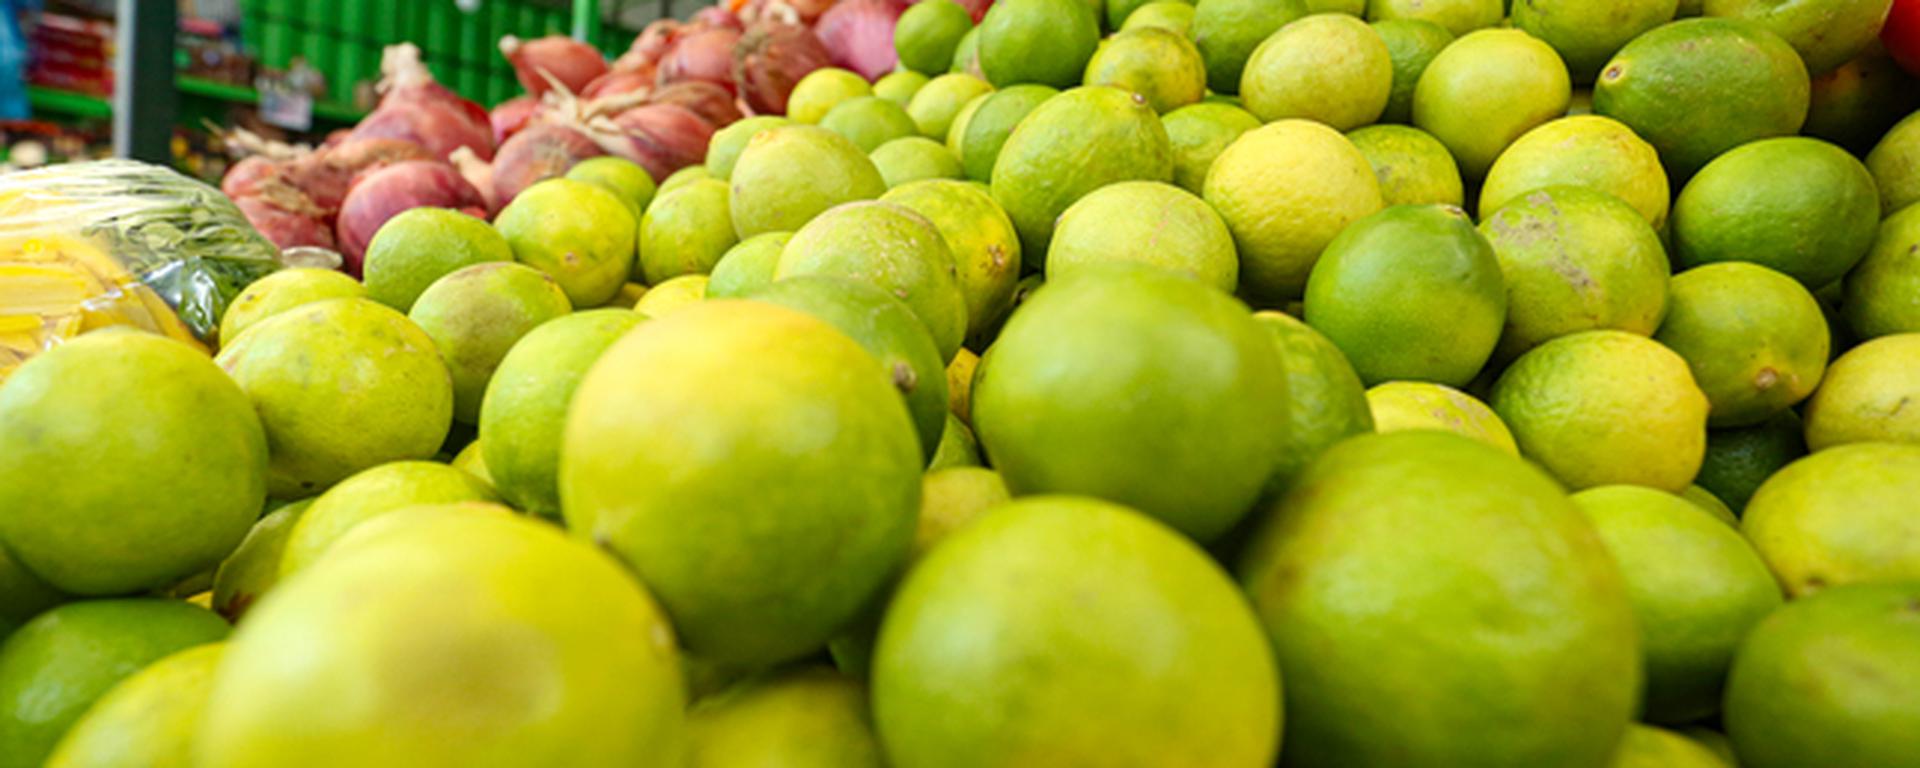 Precio del limón: ¿cuáles son las causas de la subida y cuándo podría normalizarse? | ANÁLISIS